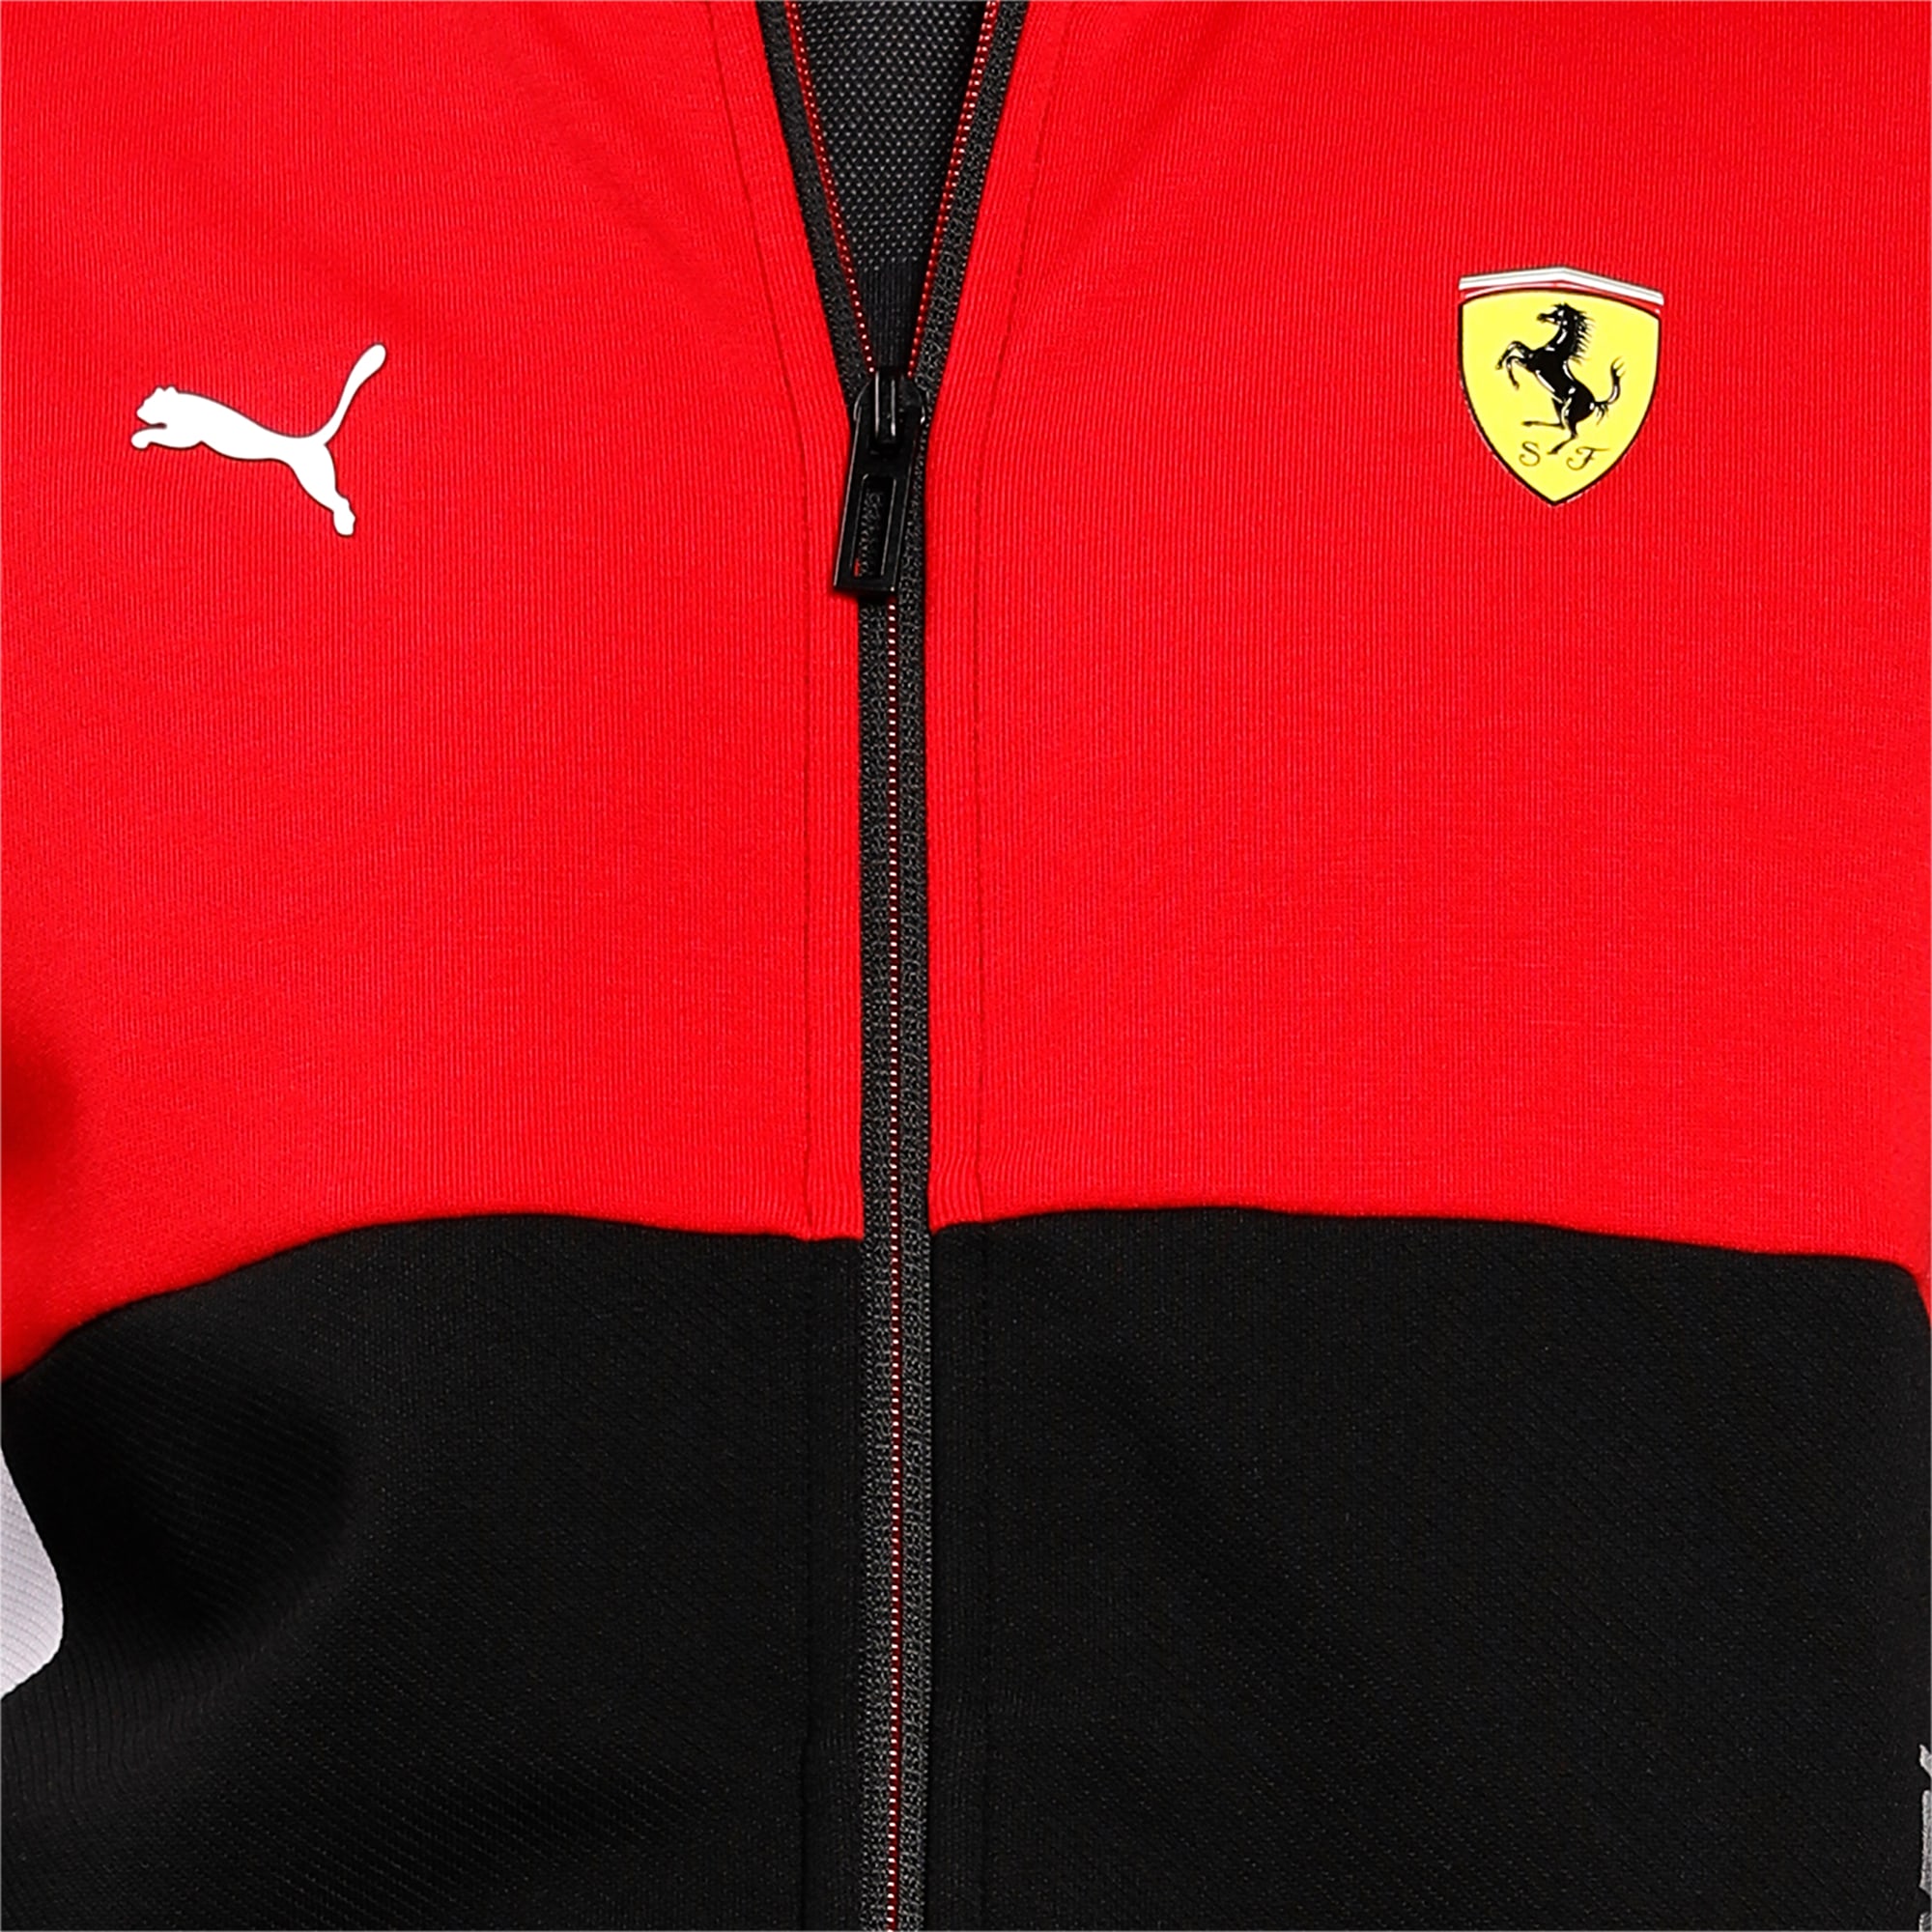 Scuderia Ferrari Men's Team Jacket